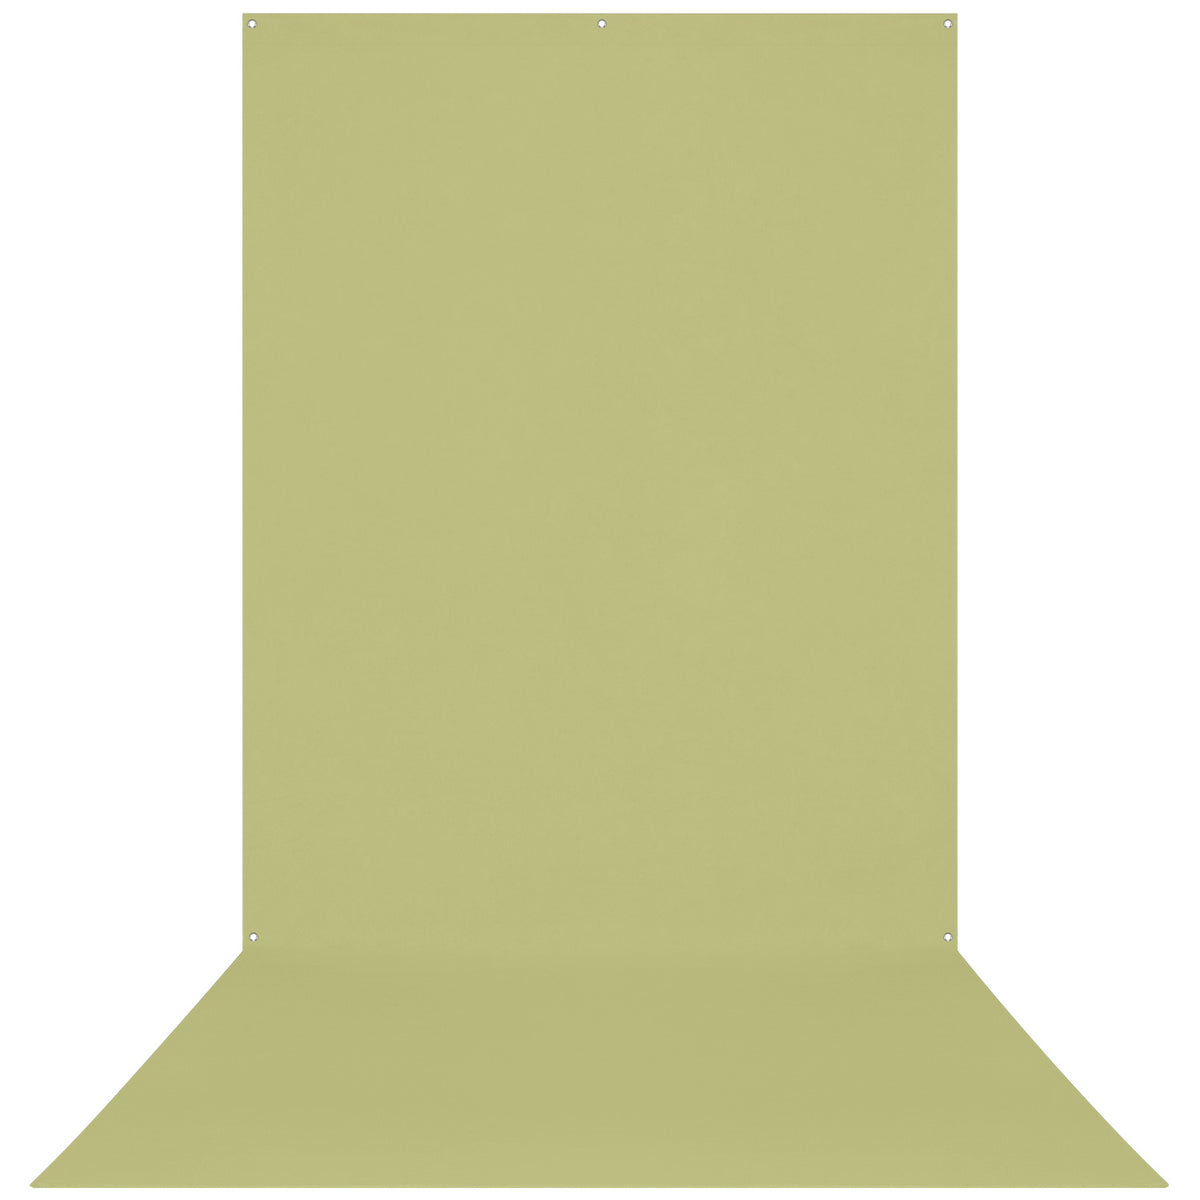 X-Drop Wrinkle-Resistant Backdrop - Light Moss Green (5' x 12')